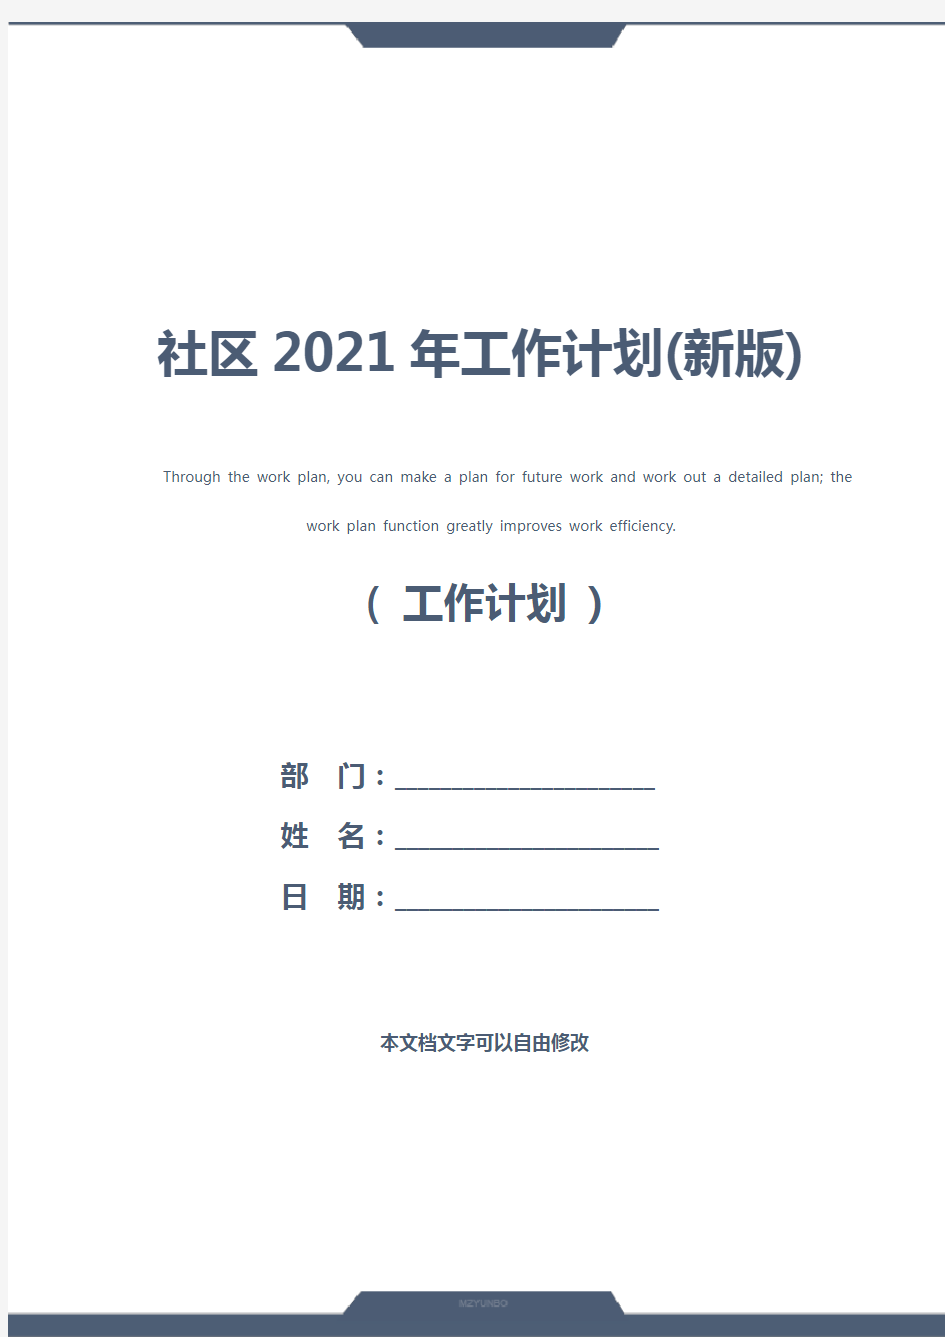 社区2021年工作计划(新版)